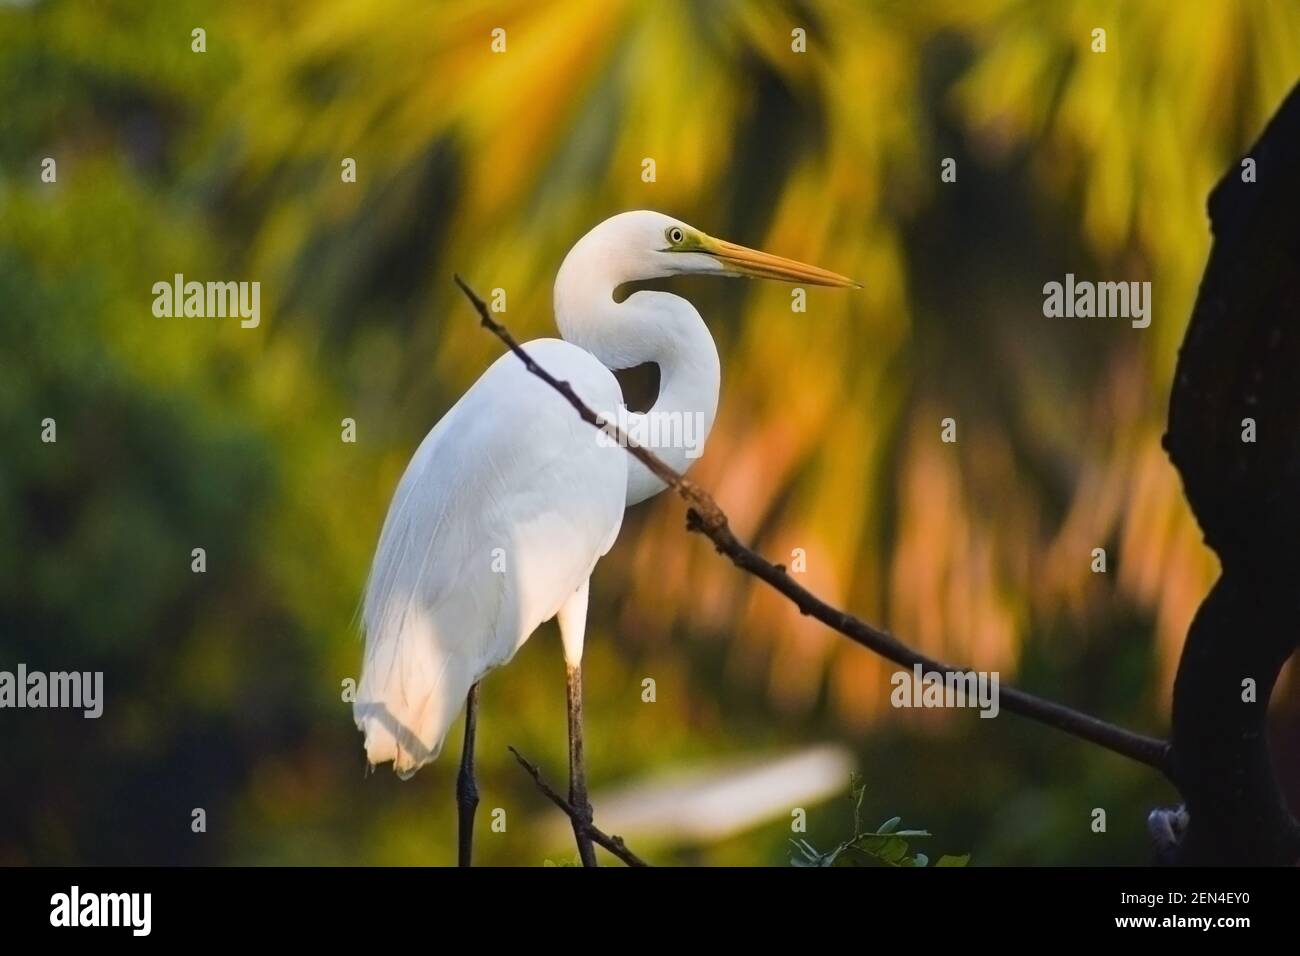 Weißer Kranich Vogel mit orangefarbenem Schnabel und langem Hals im Wald. Beste Portrait Aufnahme von Kranich und Reiher Vogel. Stockfoto